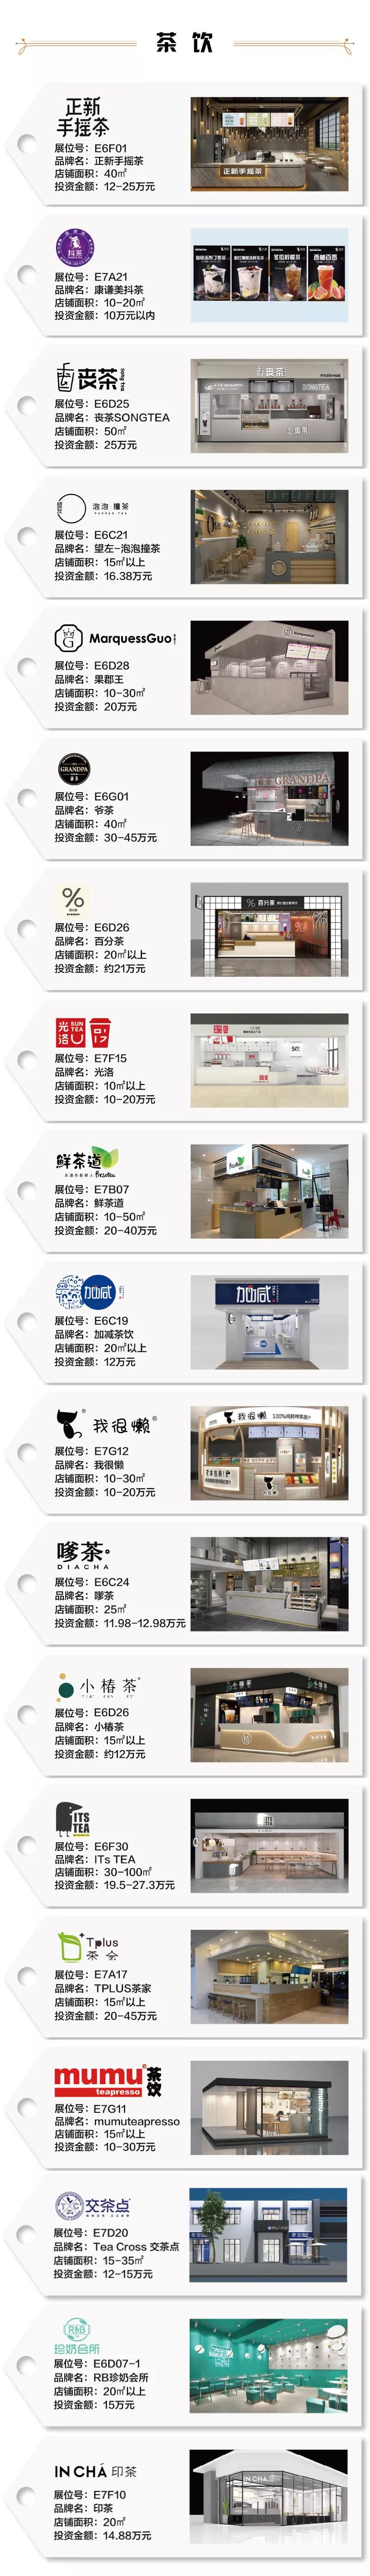 上海特许加盟展-SFE上海国际连锁加盟展览会14